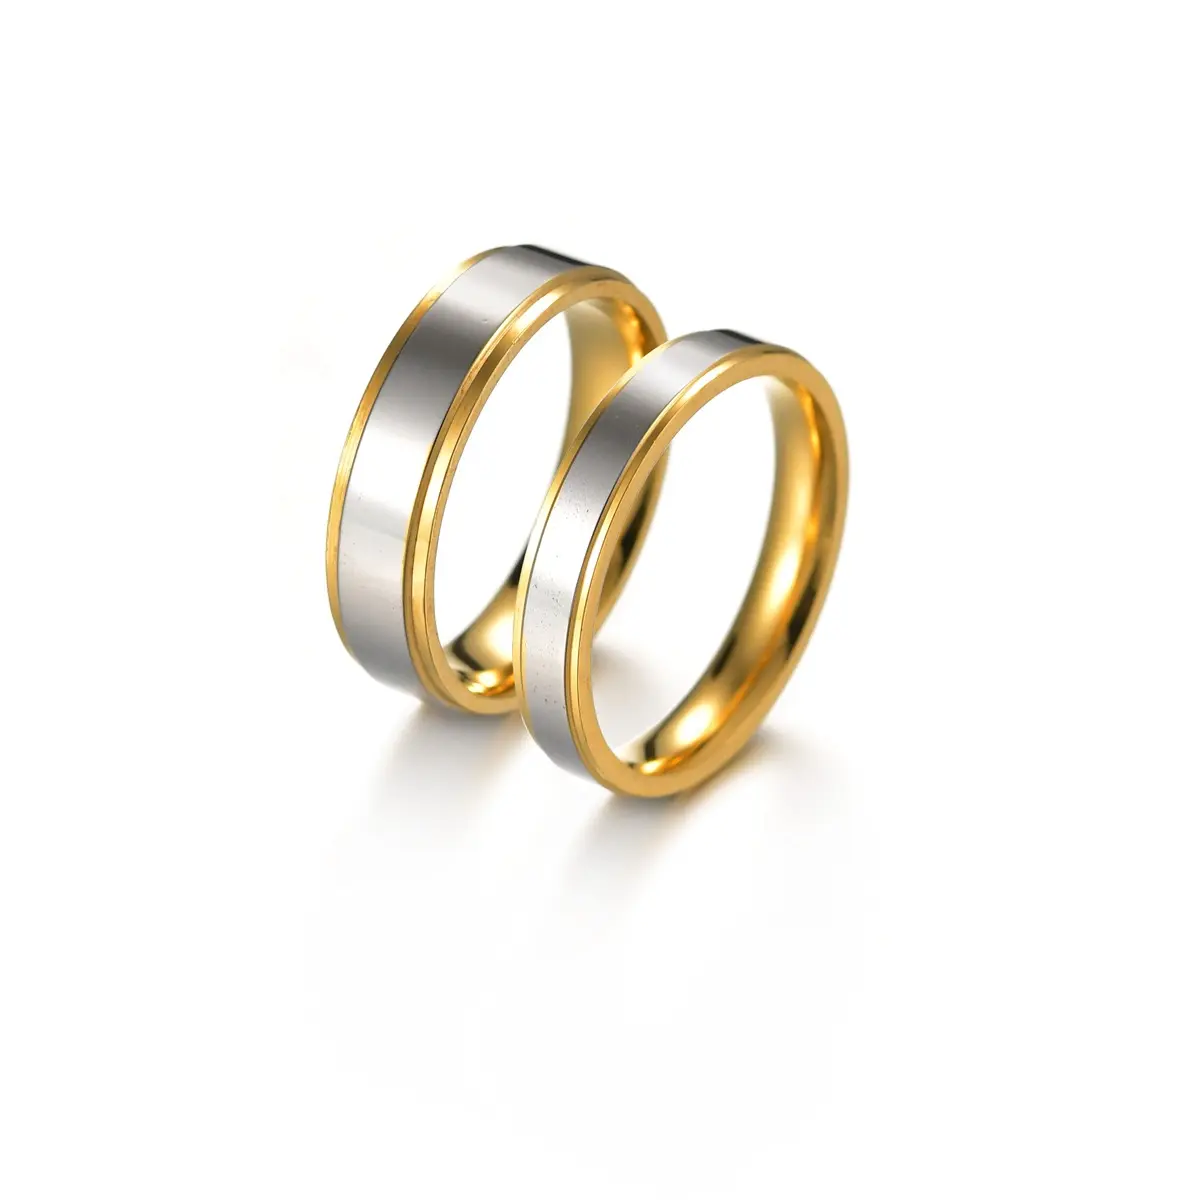 แหวนคู่รักชายและหญิงสามารถปรับแต่งได้แหวนเดี่ยวทังสเตนโลหะทองคลาสสิกชุบทองแหวนหมั้นทรงกลม